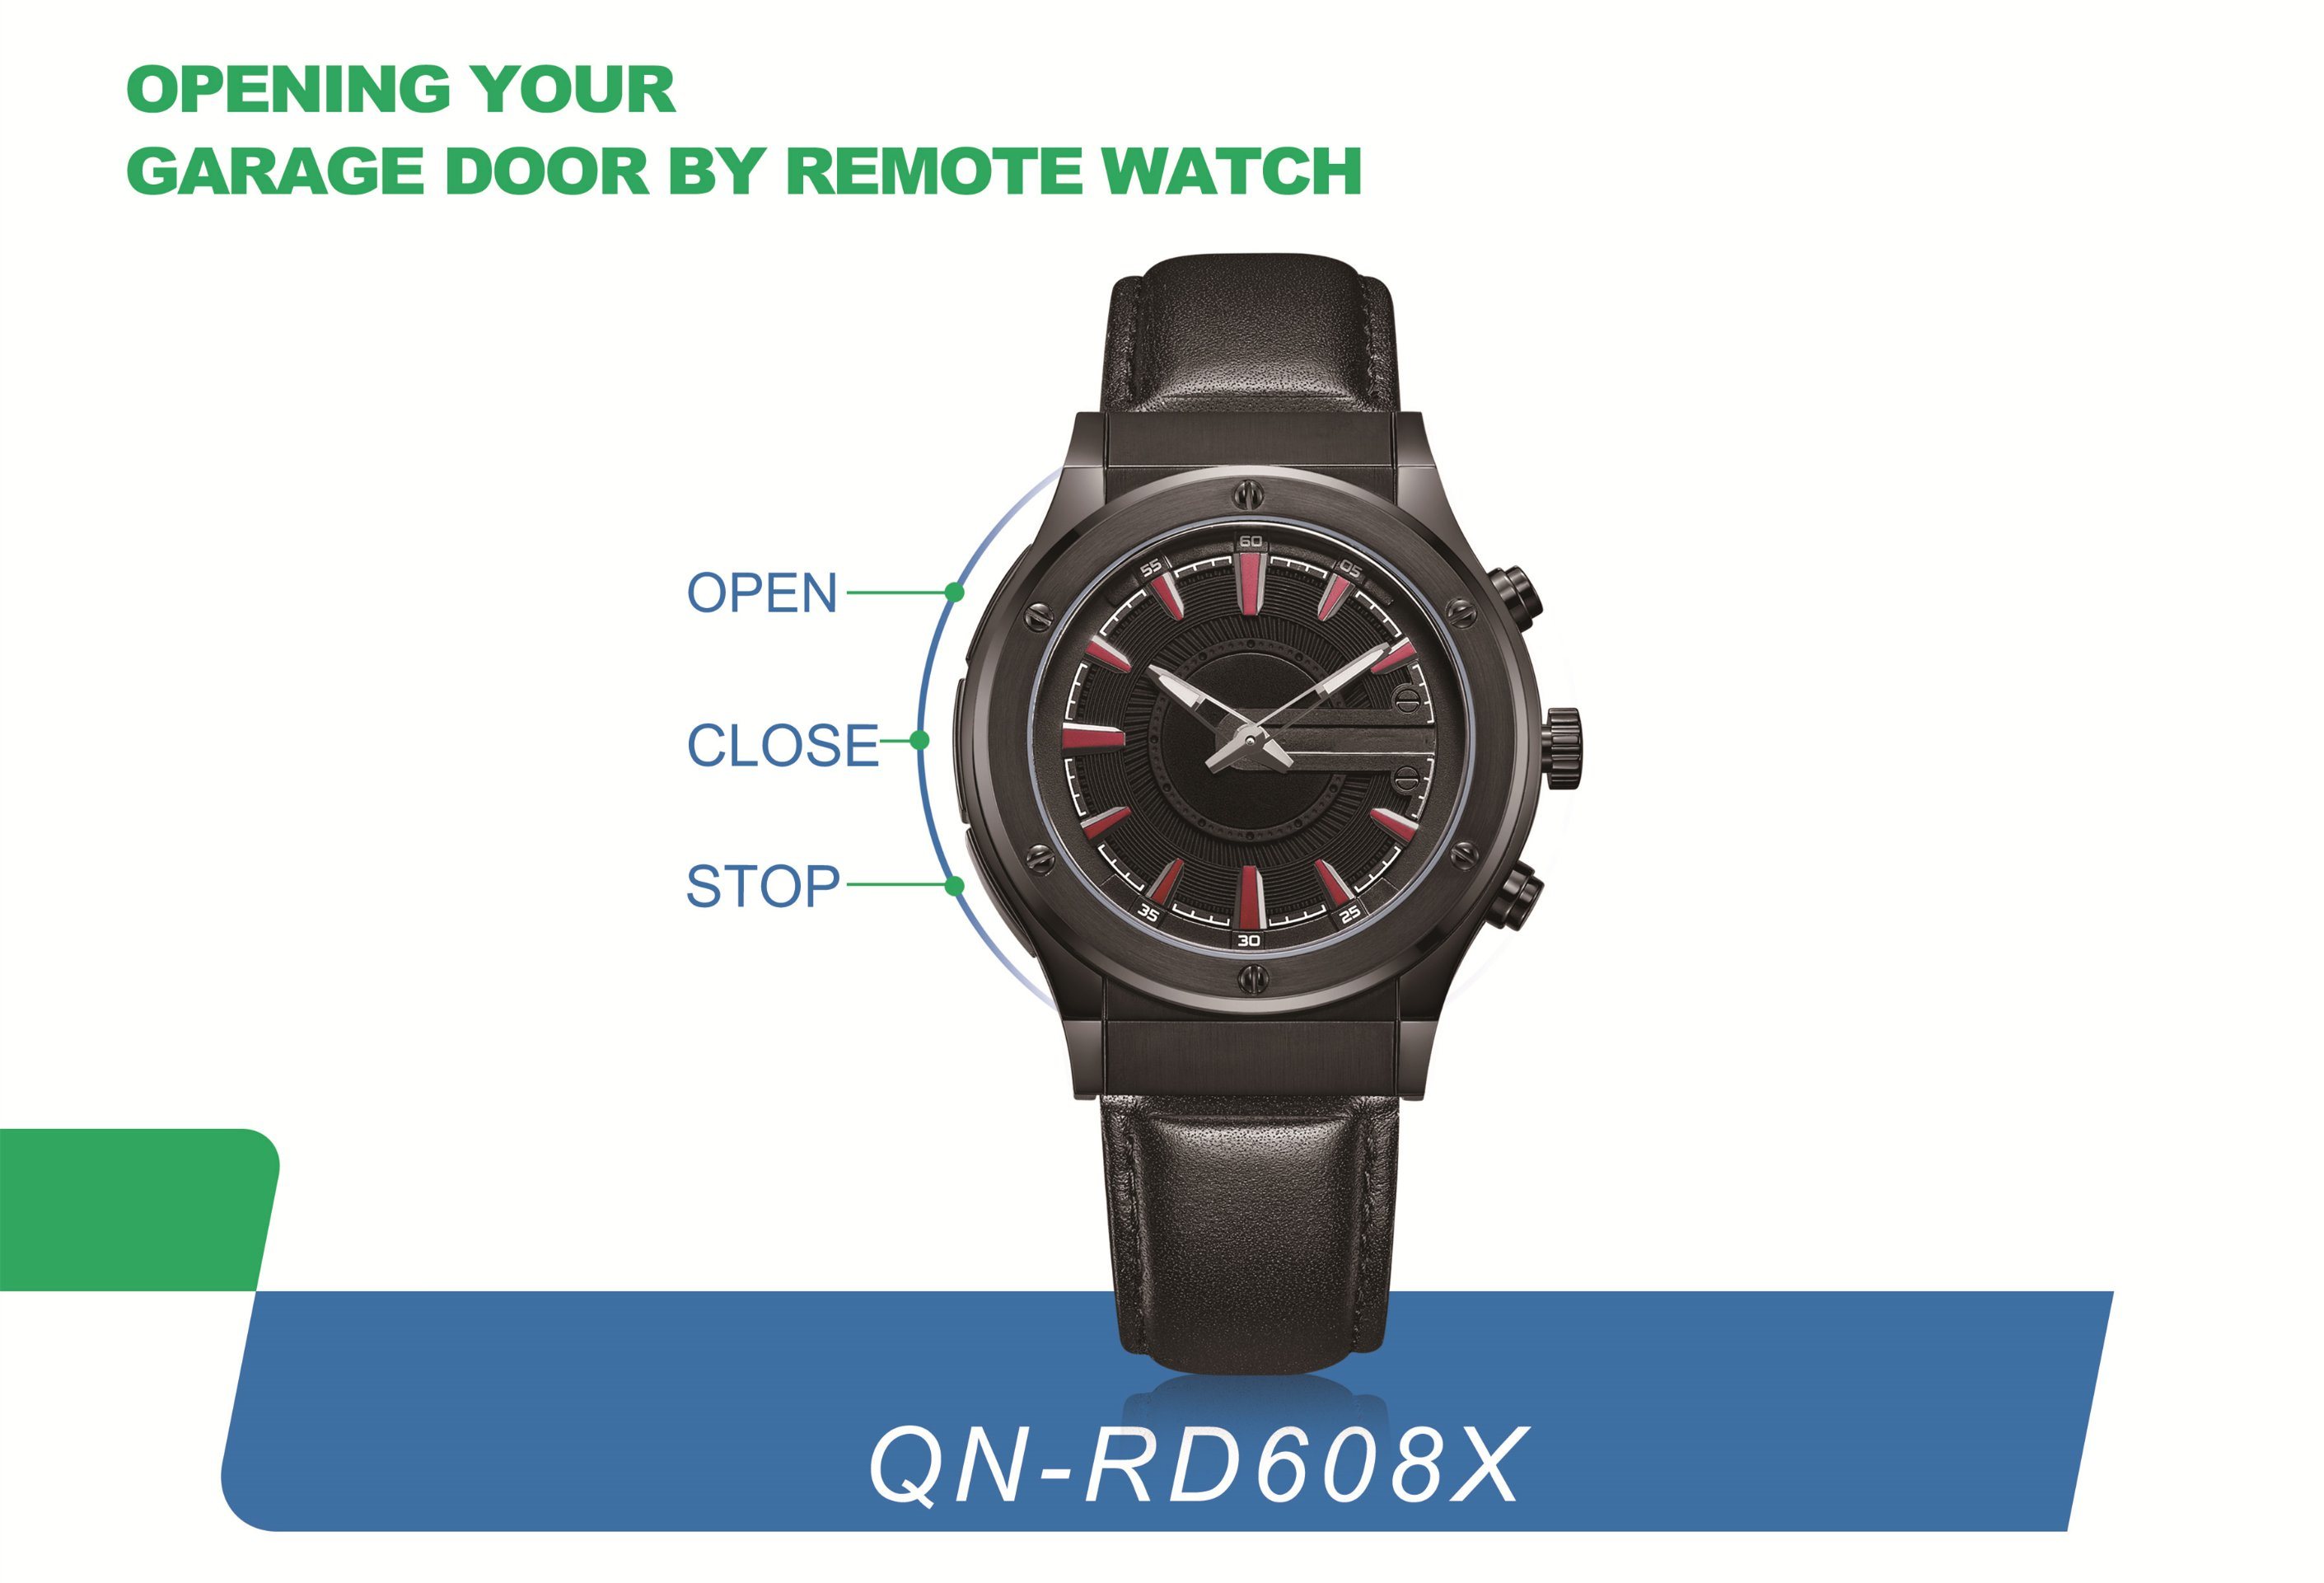 Open Your Garage Door by Remote Watch